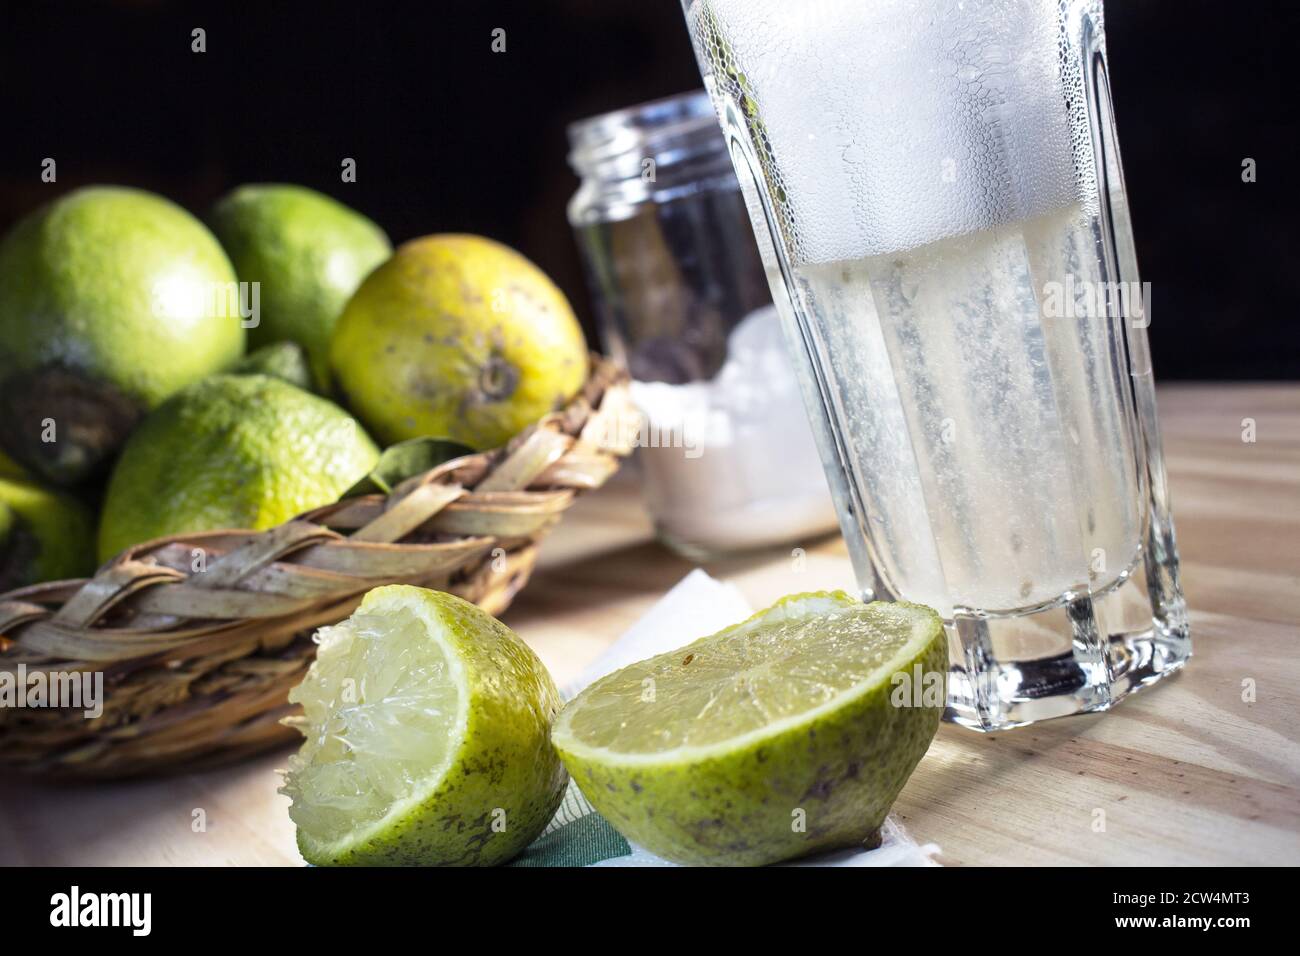 Bevanda digestiva effervescente con acqua, limone e bicarbonato chiamata a Palermo 'autista'. Alcuni limoni e bicarbonato sullo sfondo Foto Stock